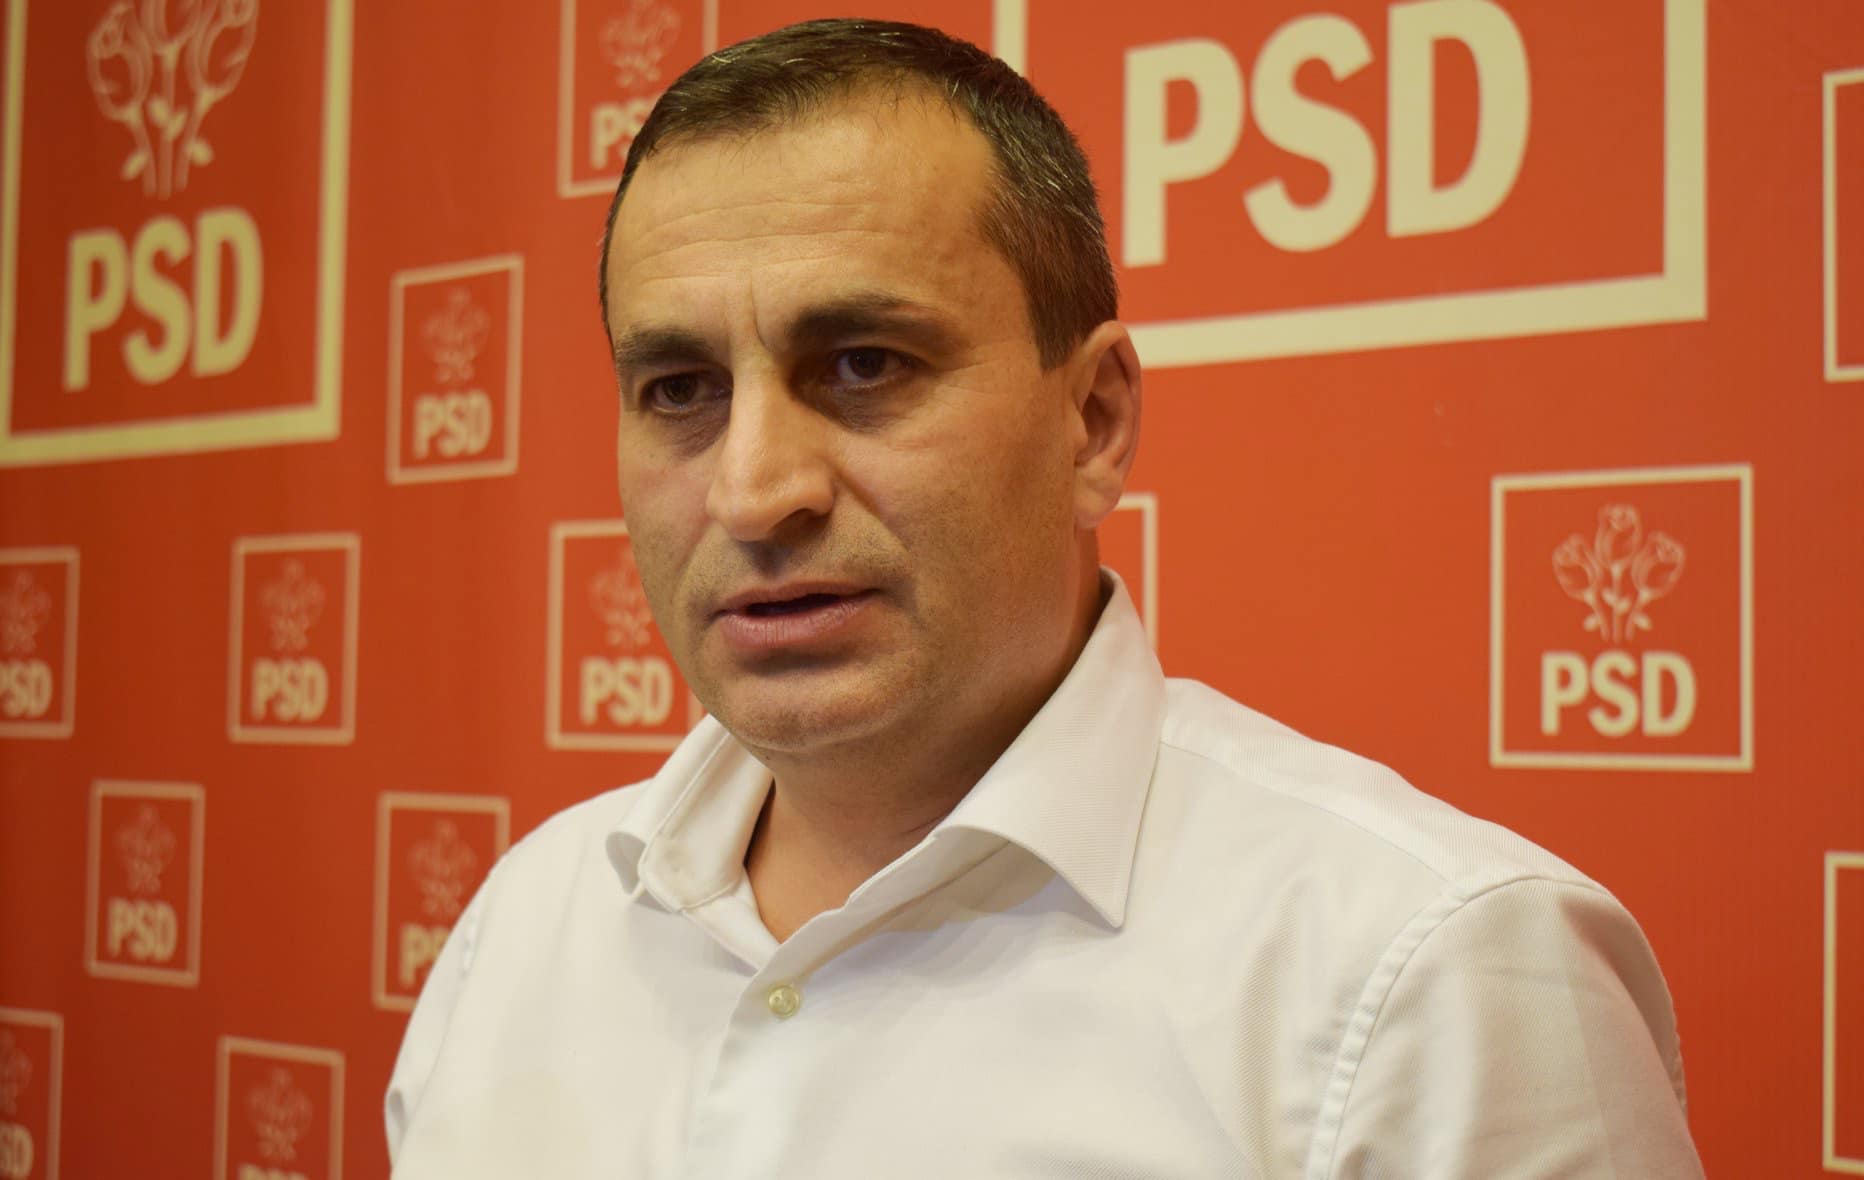 Marius Oprescu, pas lui Gigel Ştirbu: “Nu vom face alianţă şi nici nu vom avea candidaţi comuni la alegerile locale din iunie”